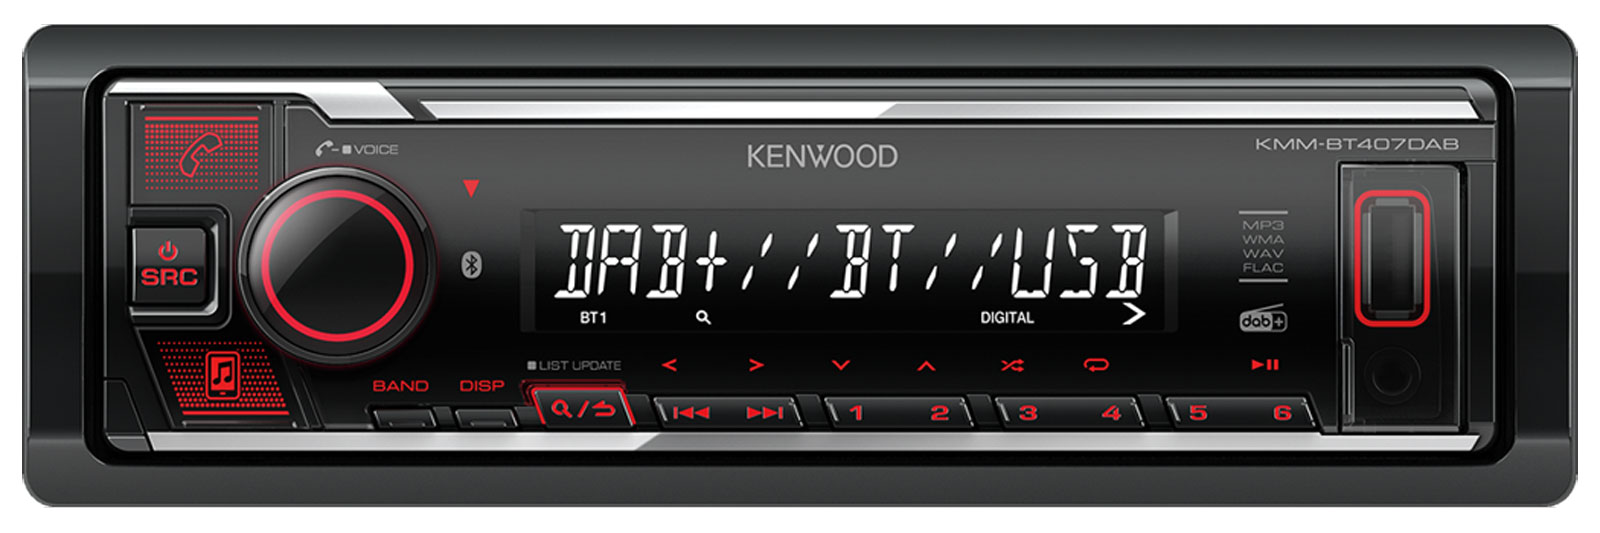 Kenwood KMM-BT407DAB - MP3-Autoradio mit DAB / Bluetooth / USB / iPod / AUX-IN